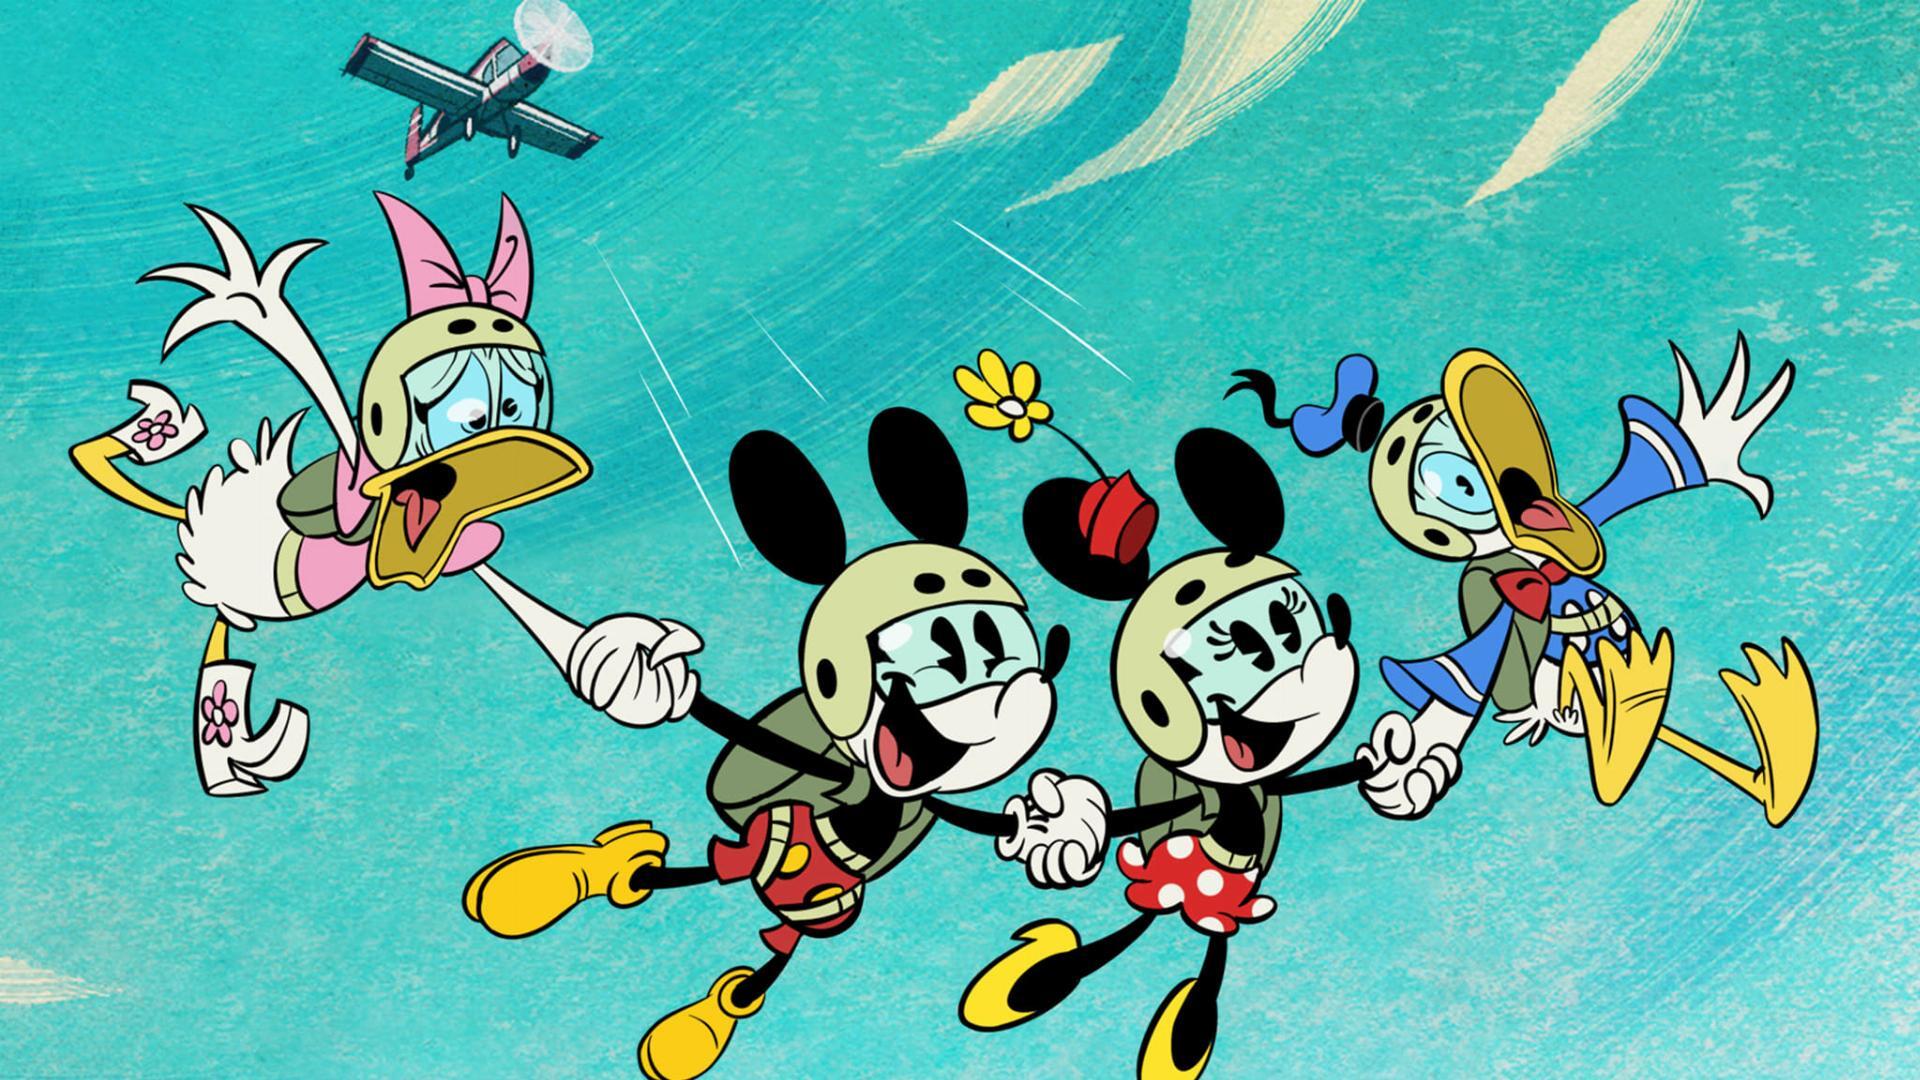 მიკი მაუსის საოცარი სამყარო / The Wonderful World of Mickey Mouse